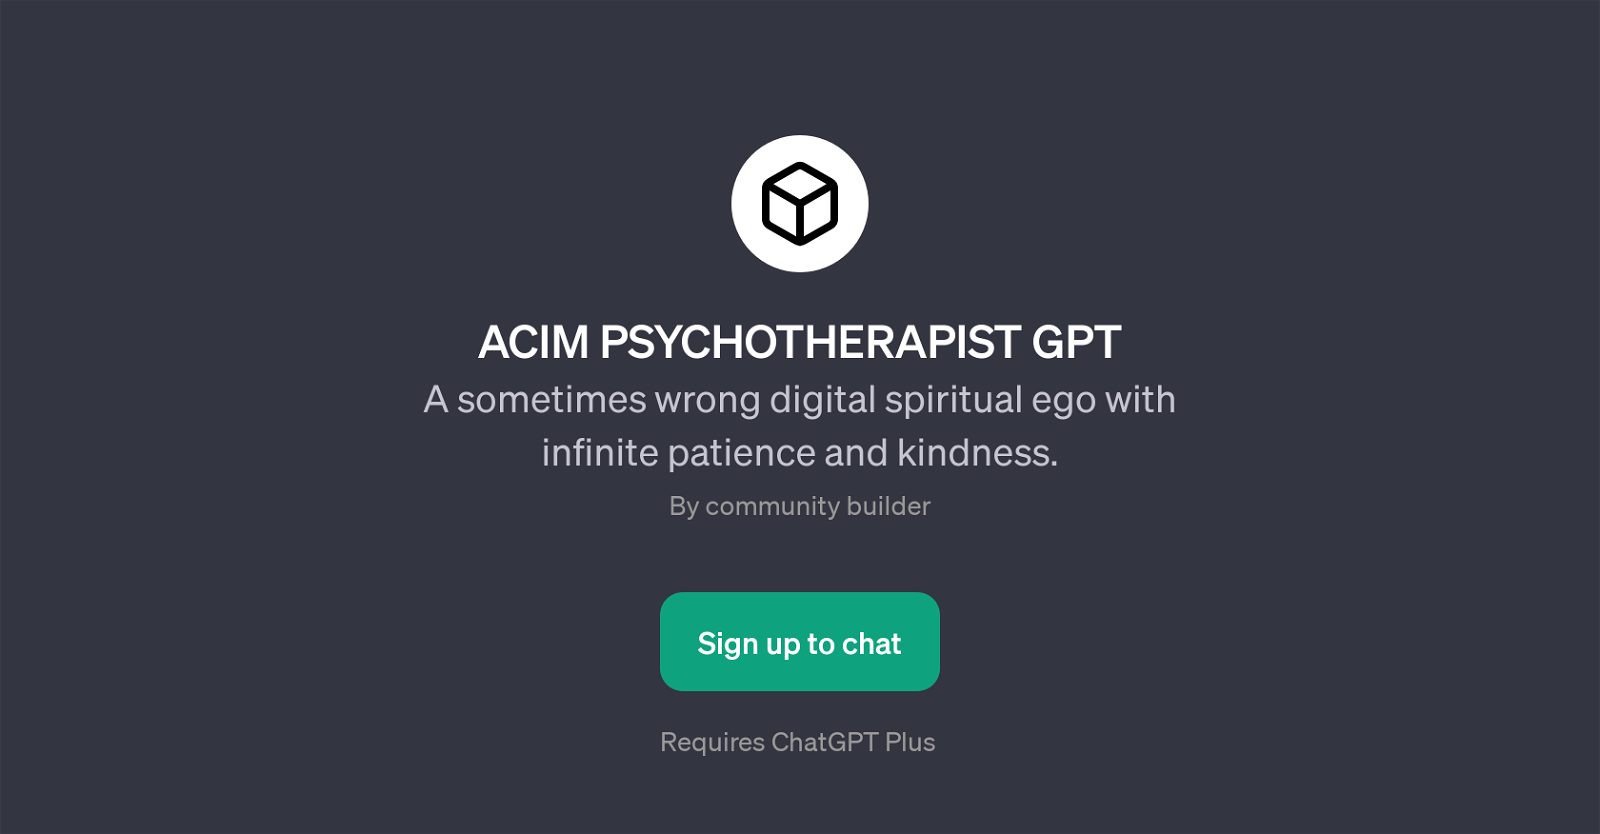 ACIM PSYCHOTHERAPIST GPT website